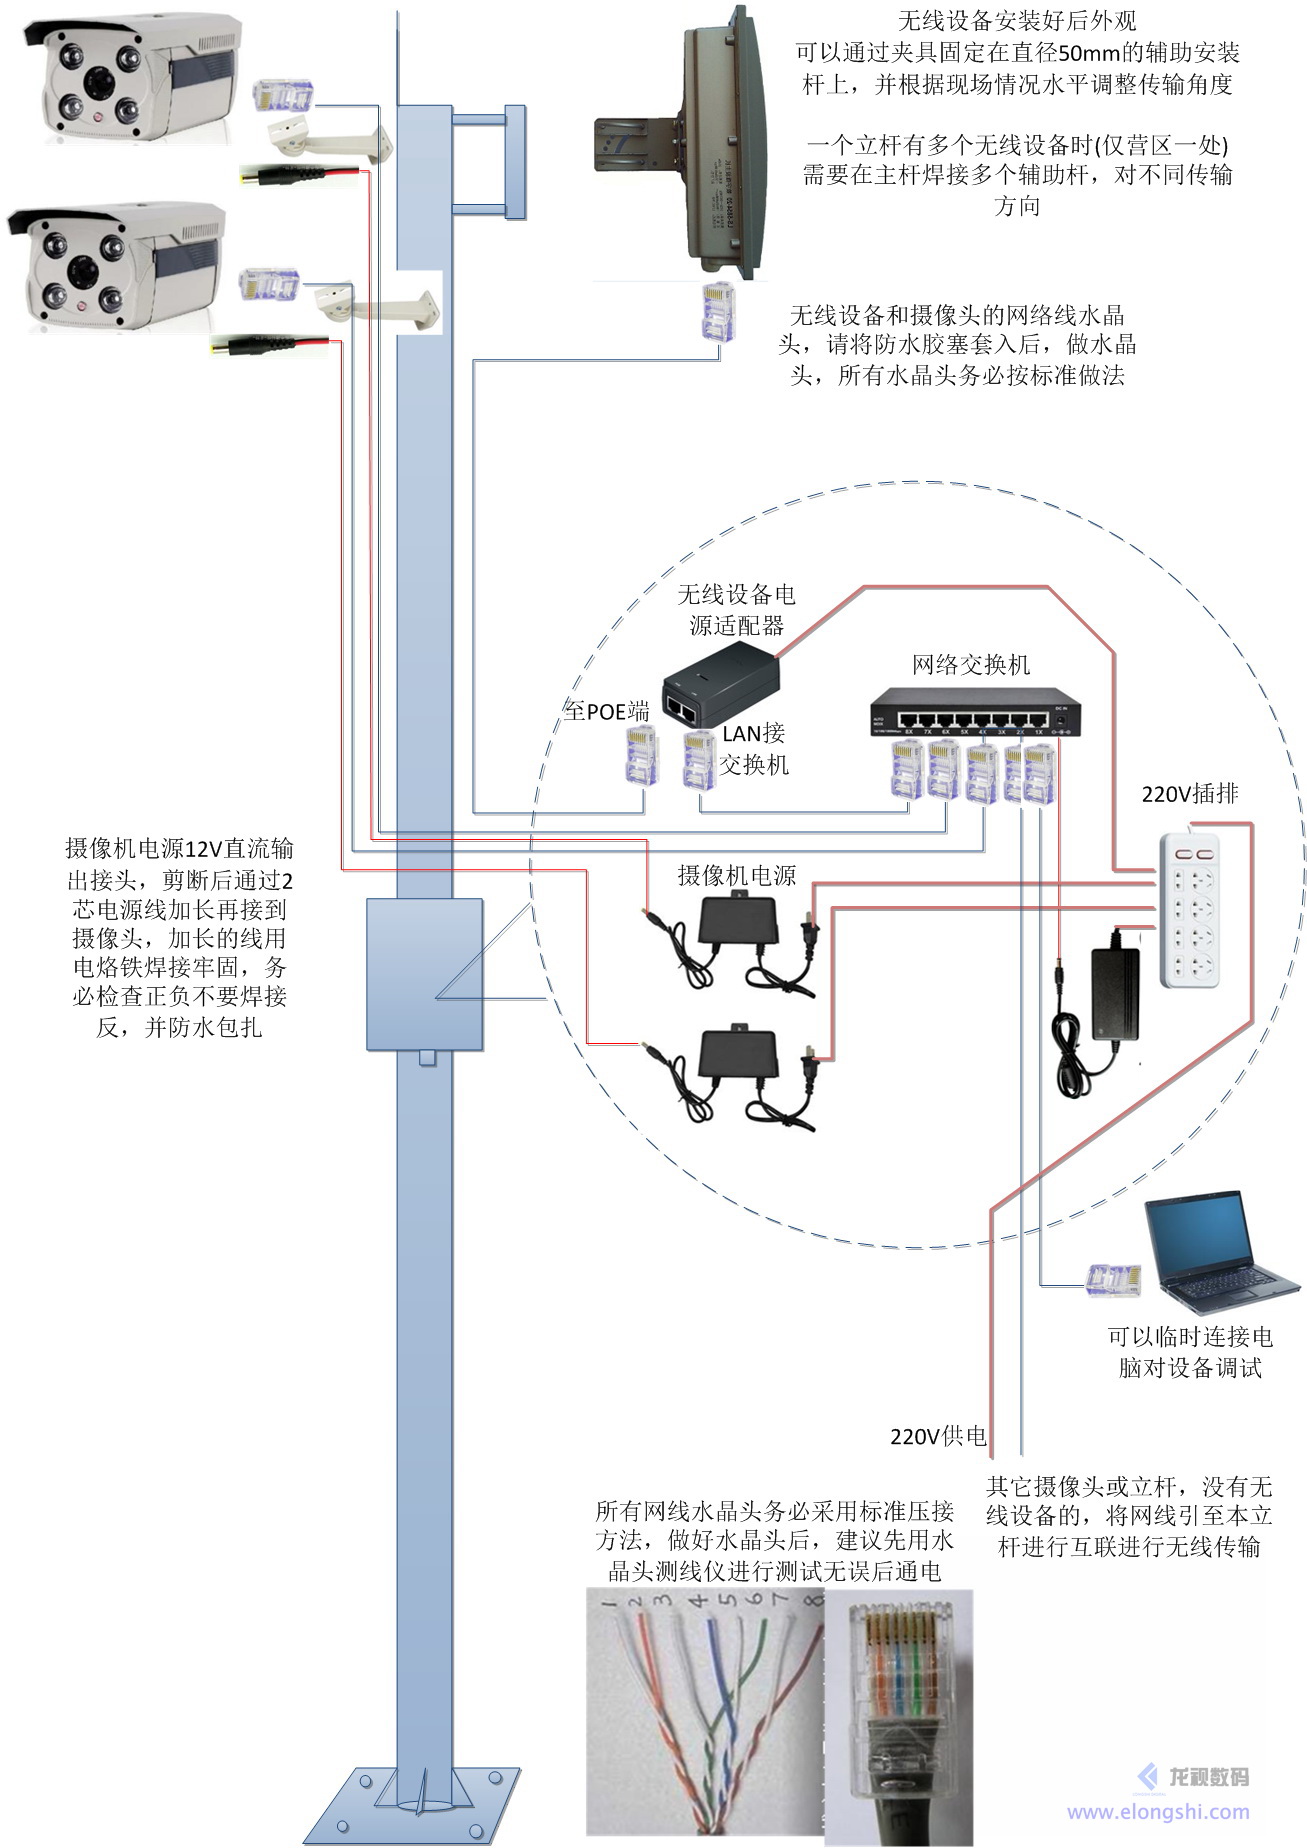 龙视数码监控点和监控中心无线设备连接图